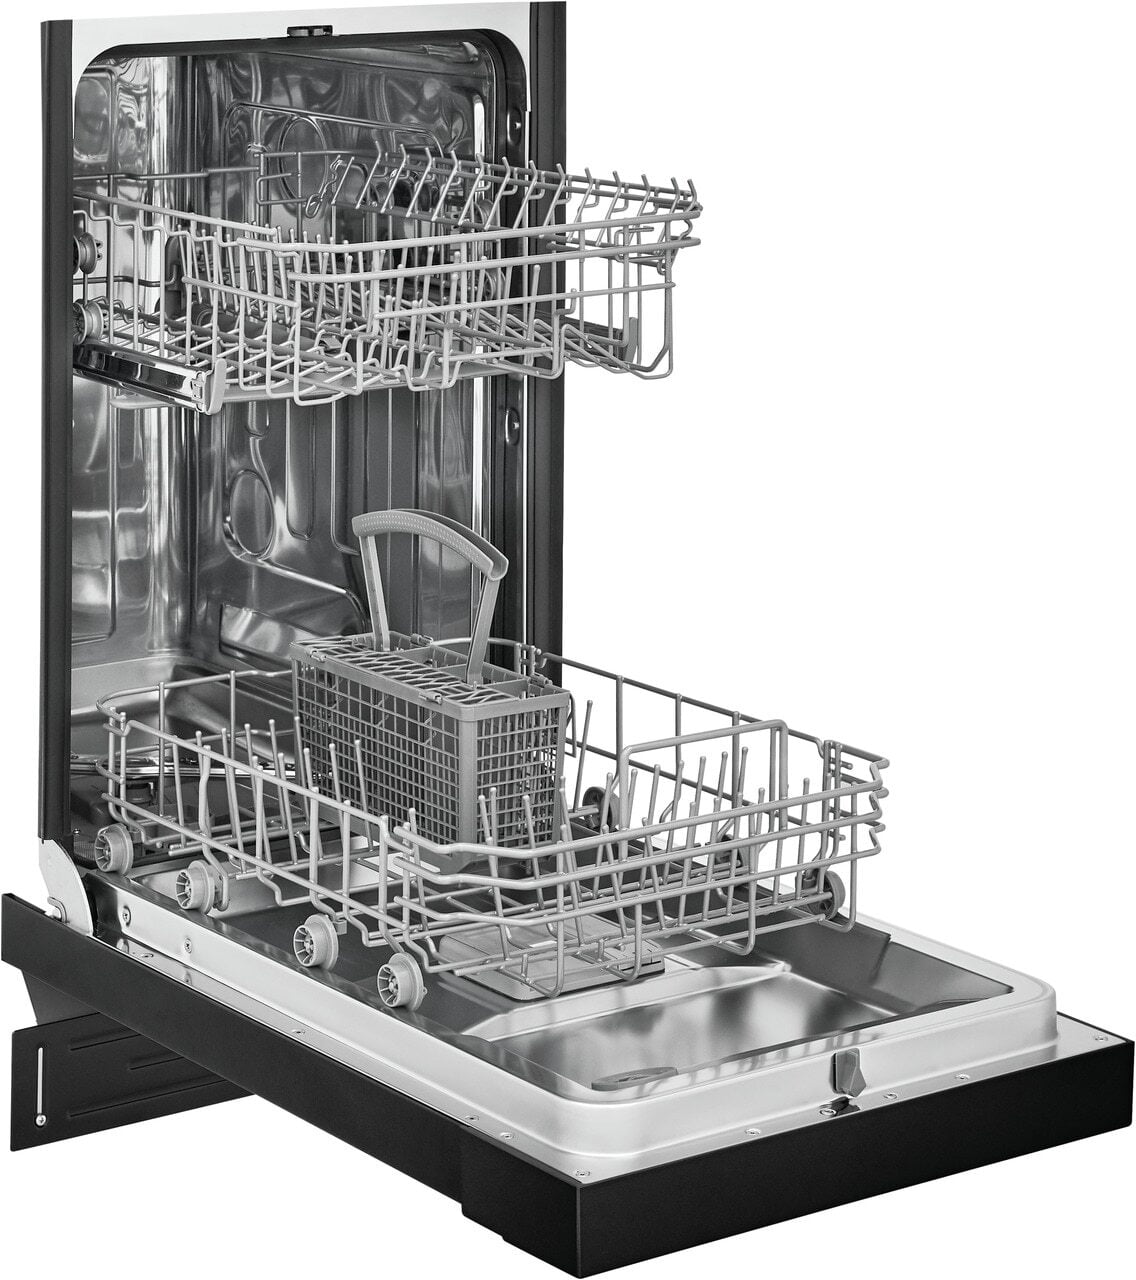 Frigidaire FFBD1831UB Frigidaire 18'' Built-In Dishwasher